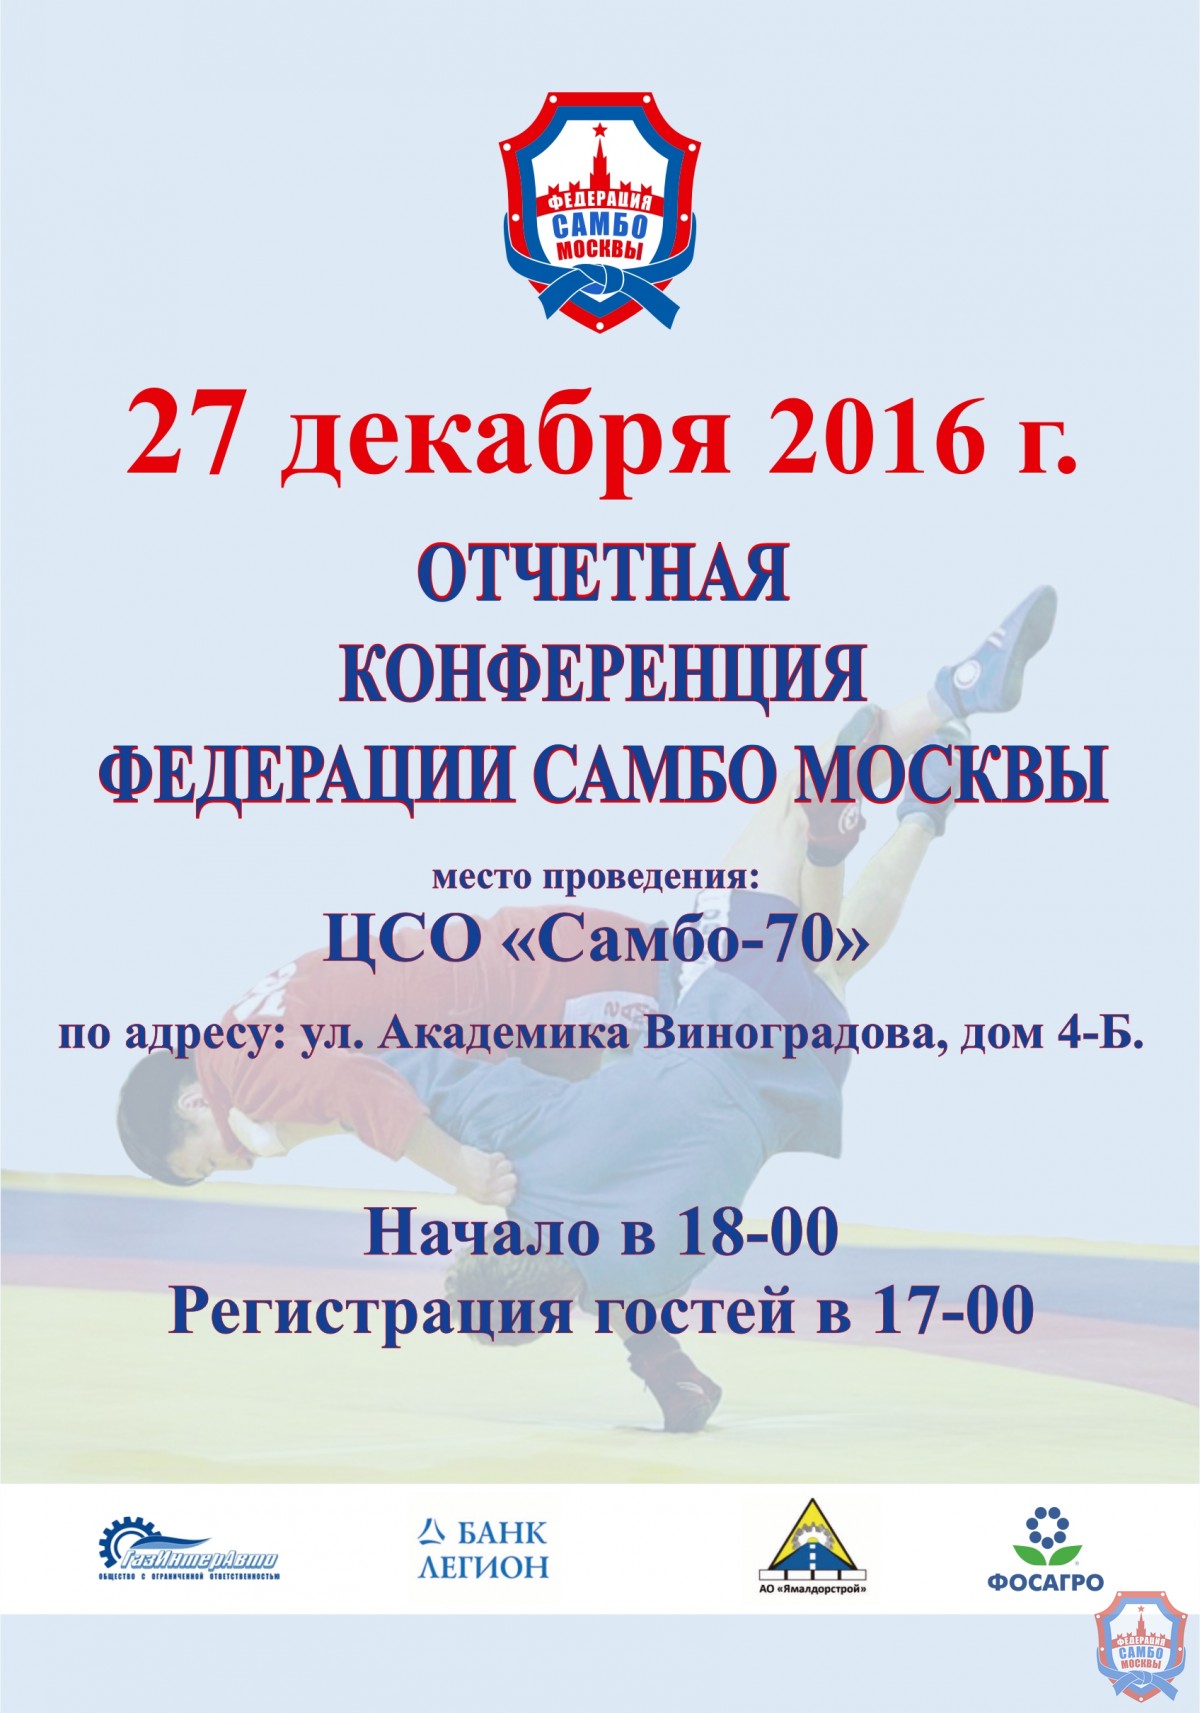 27 декабря состоится отчетная конференция Федерации самбо Москвы по итогам 2016 года
